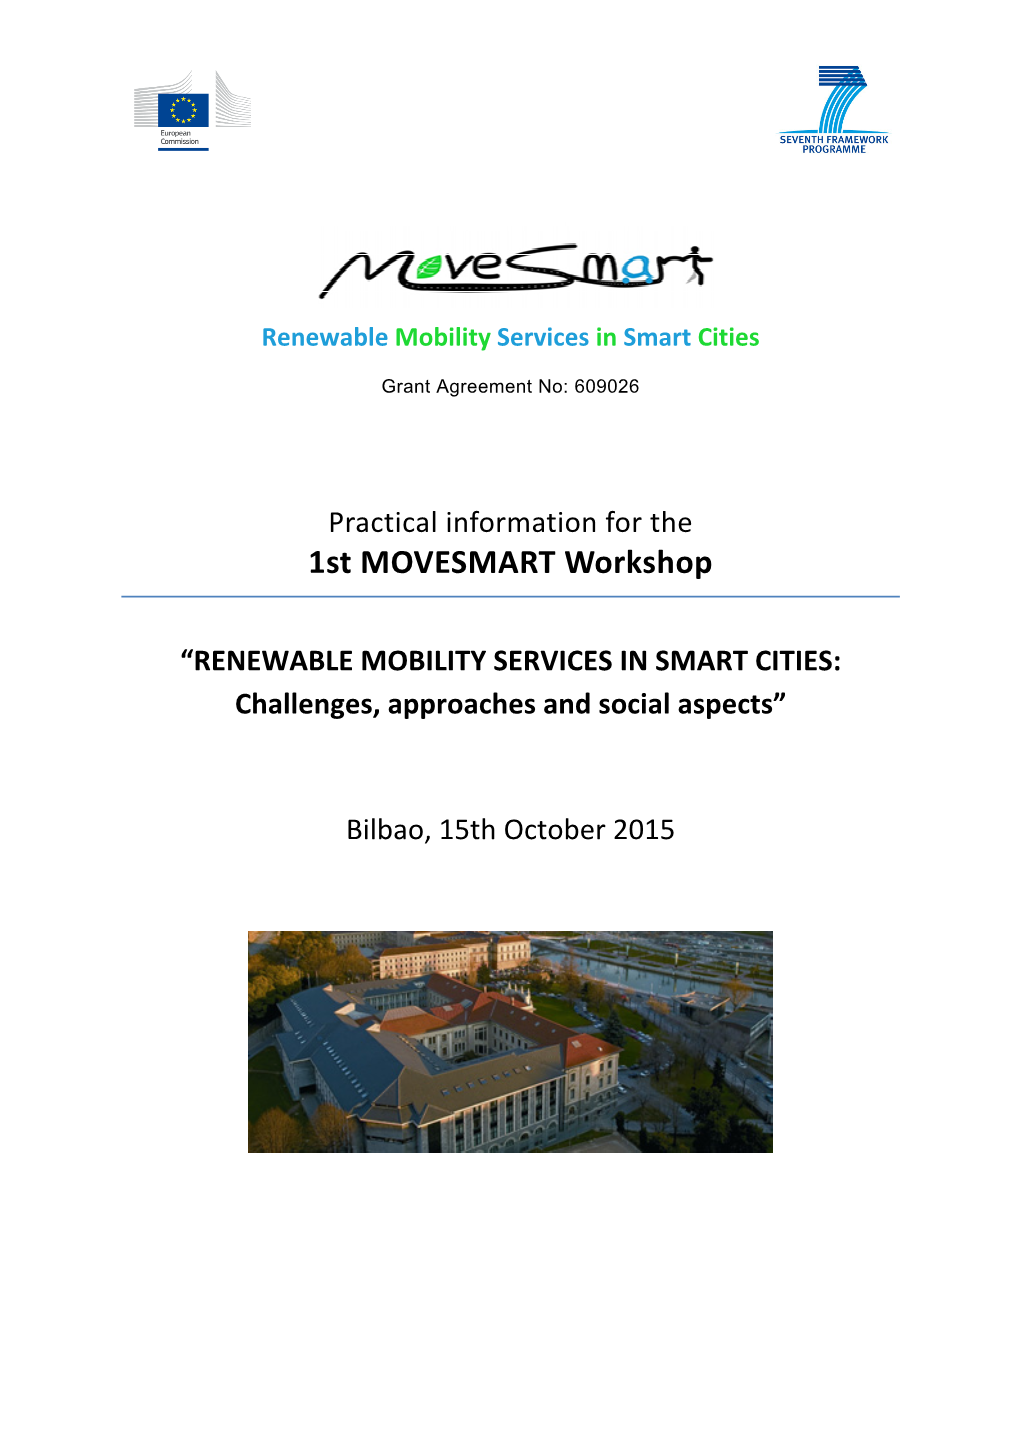 1St MOVESMART Workshop